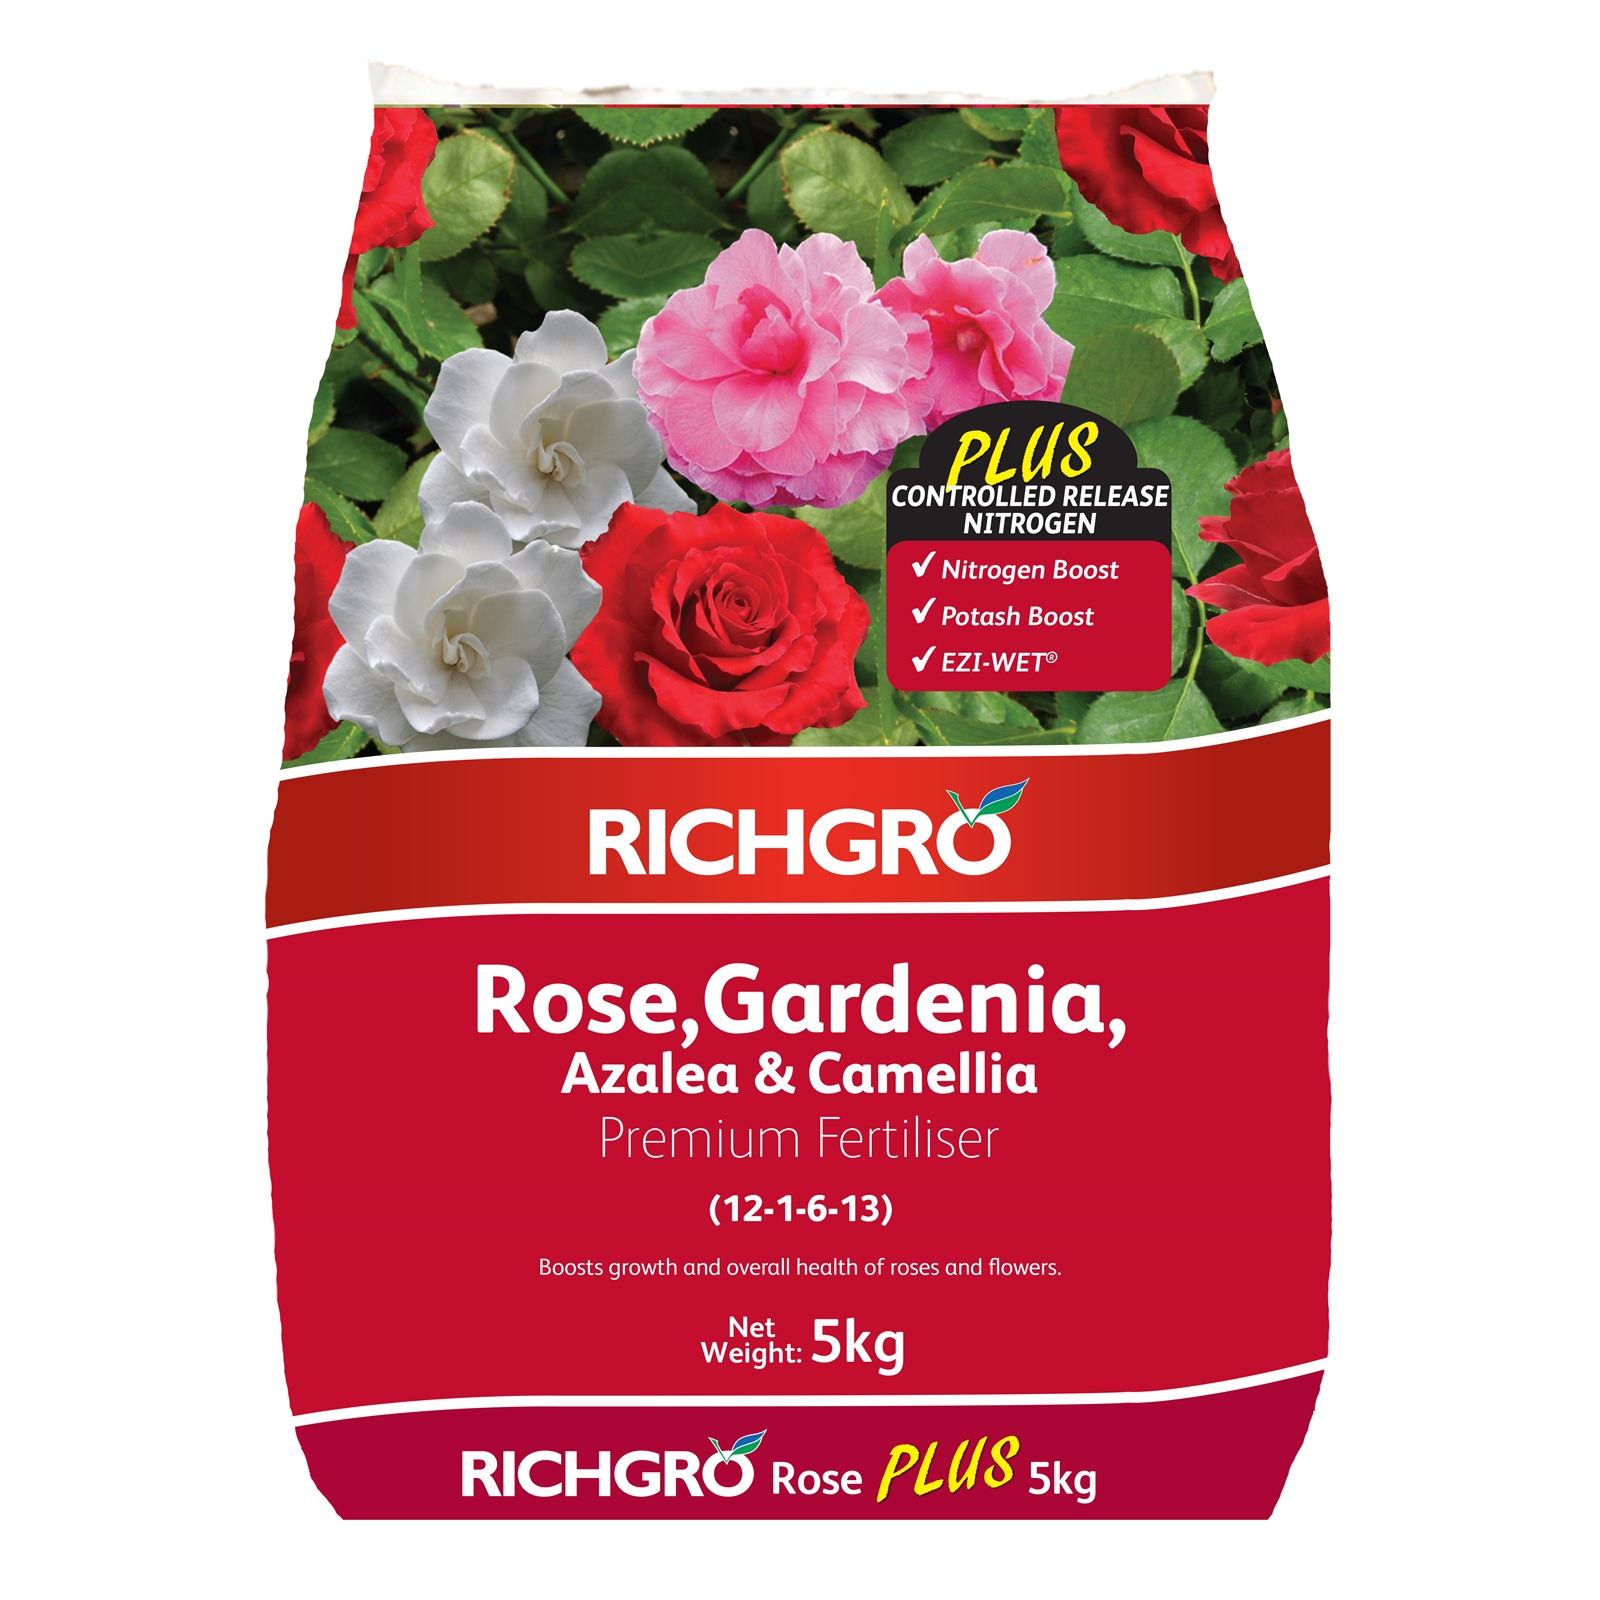 Richgro 5kg Rose, Gardenia, Azalea Premium Fertiliser Plus